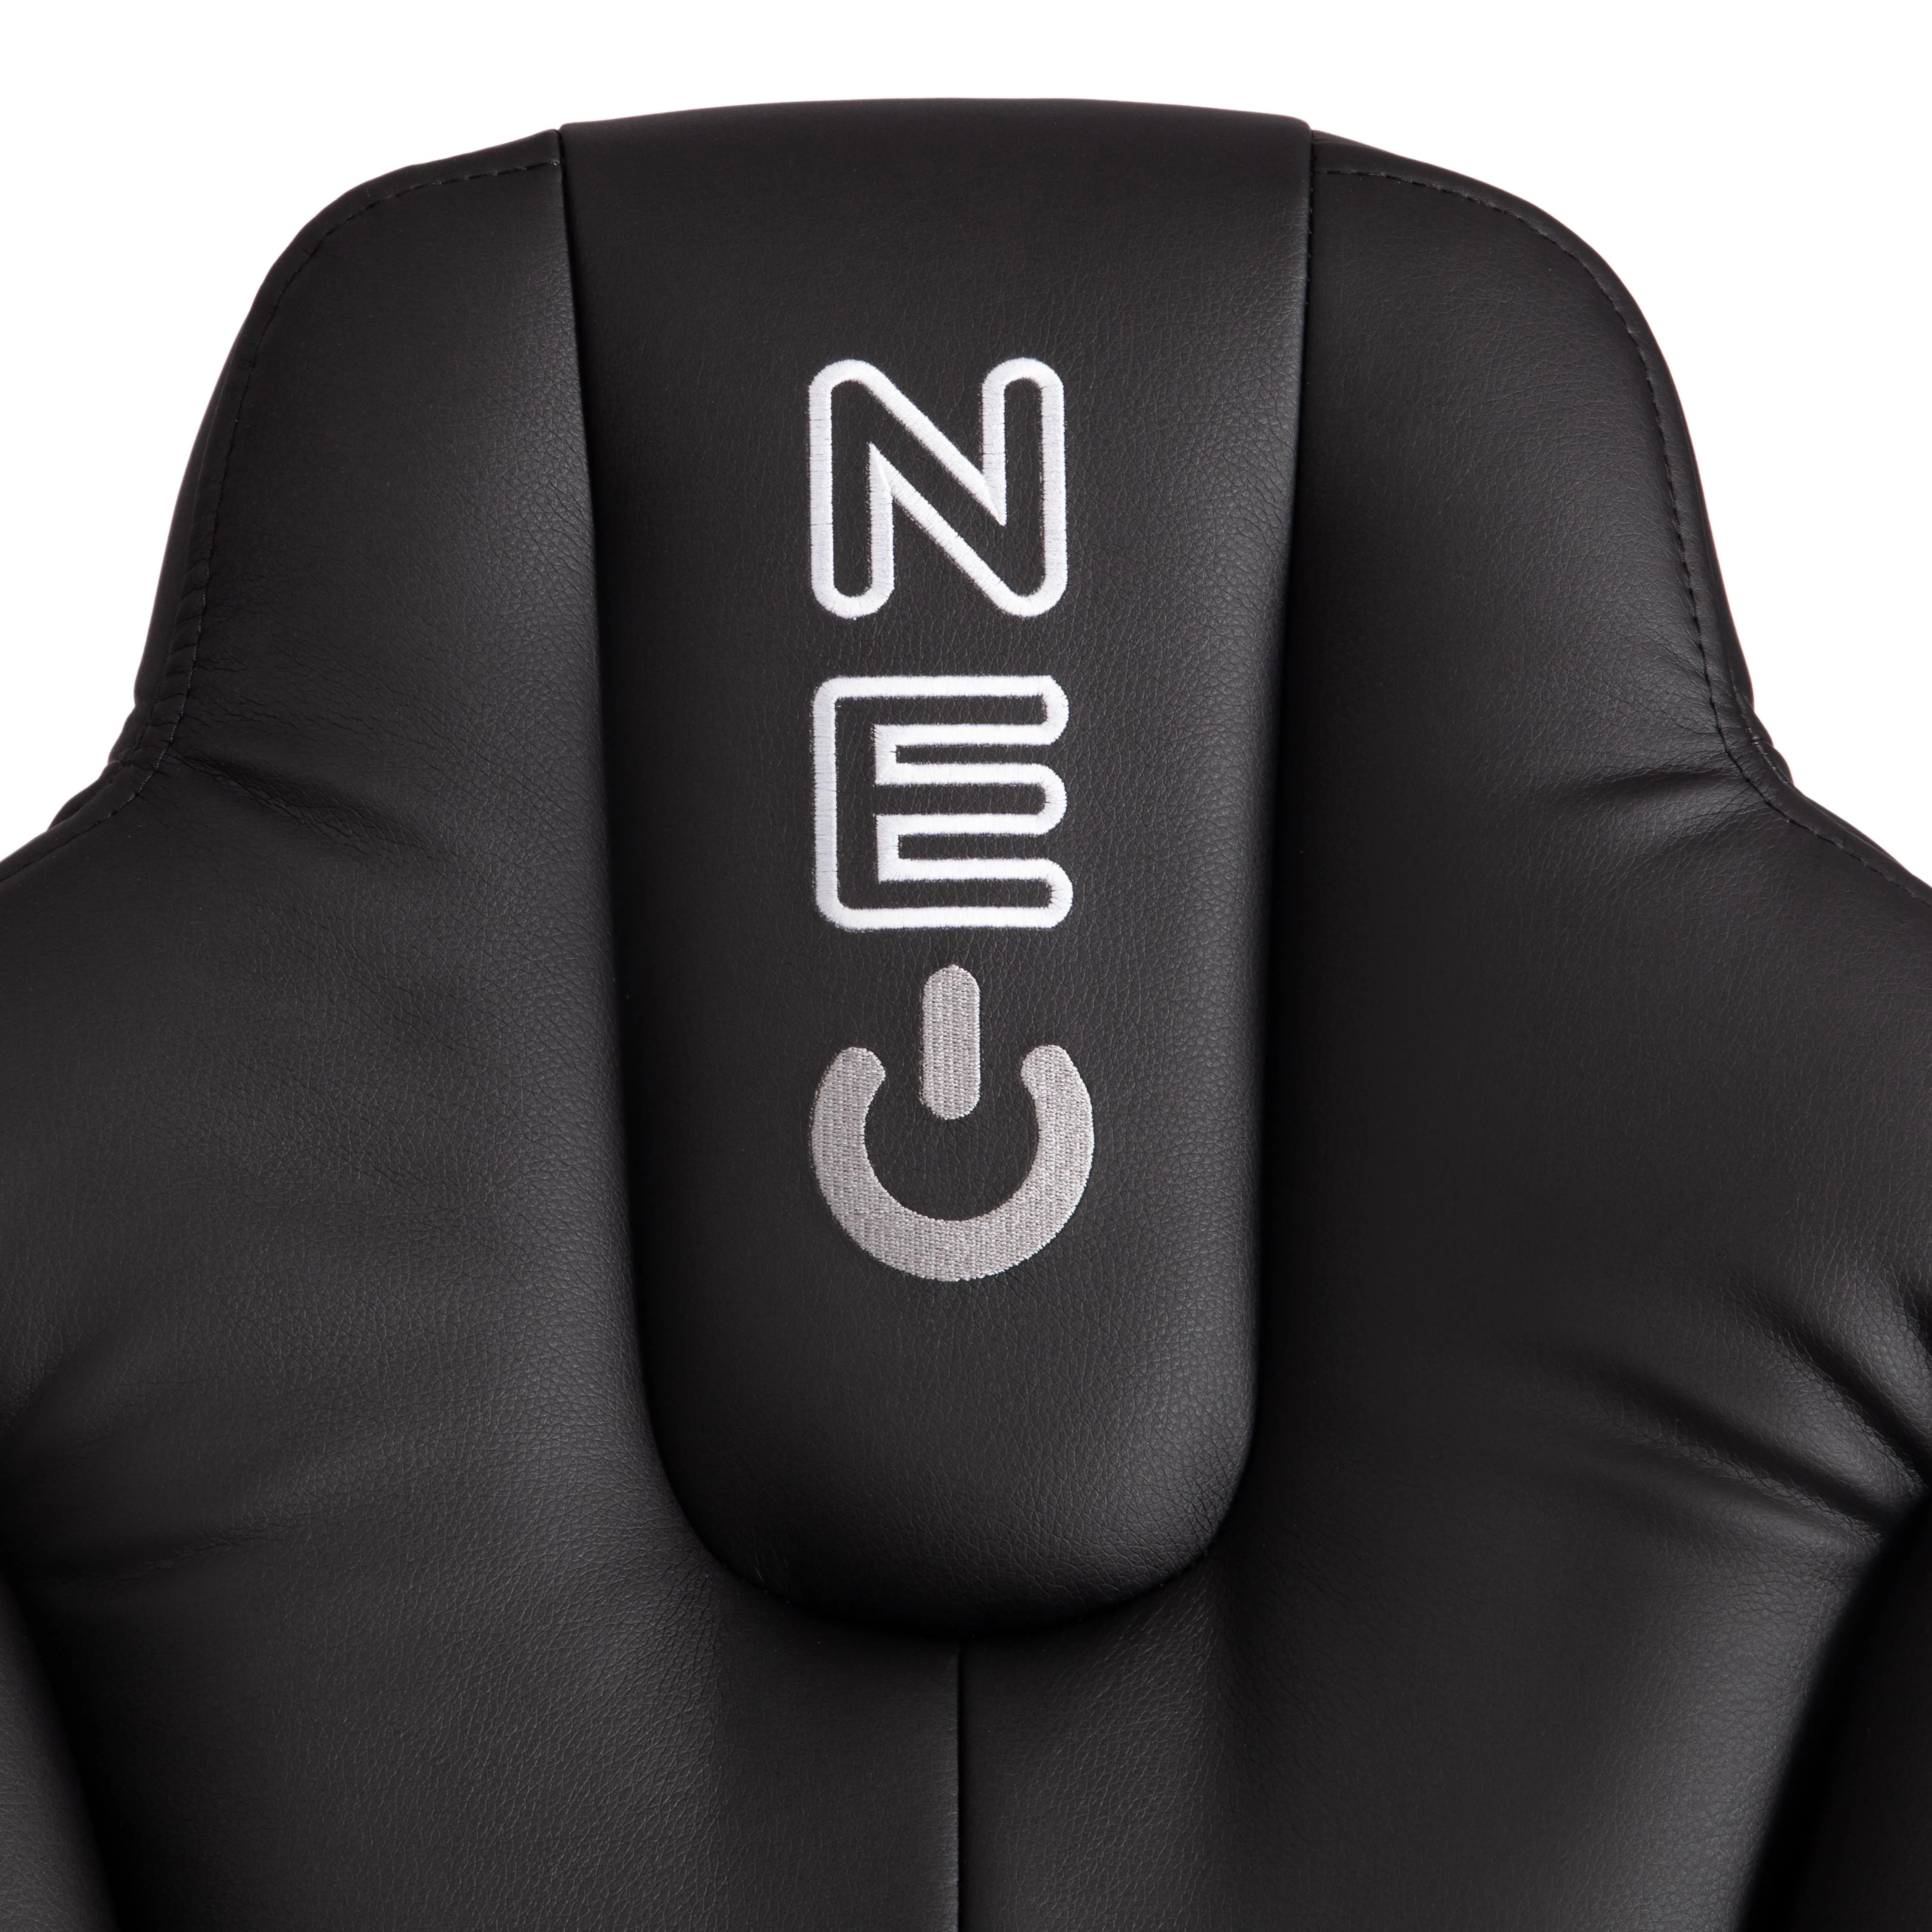 Кресло для геймера NEO 2 (22) Черный